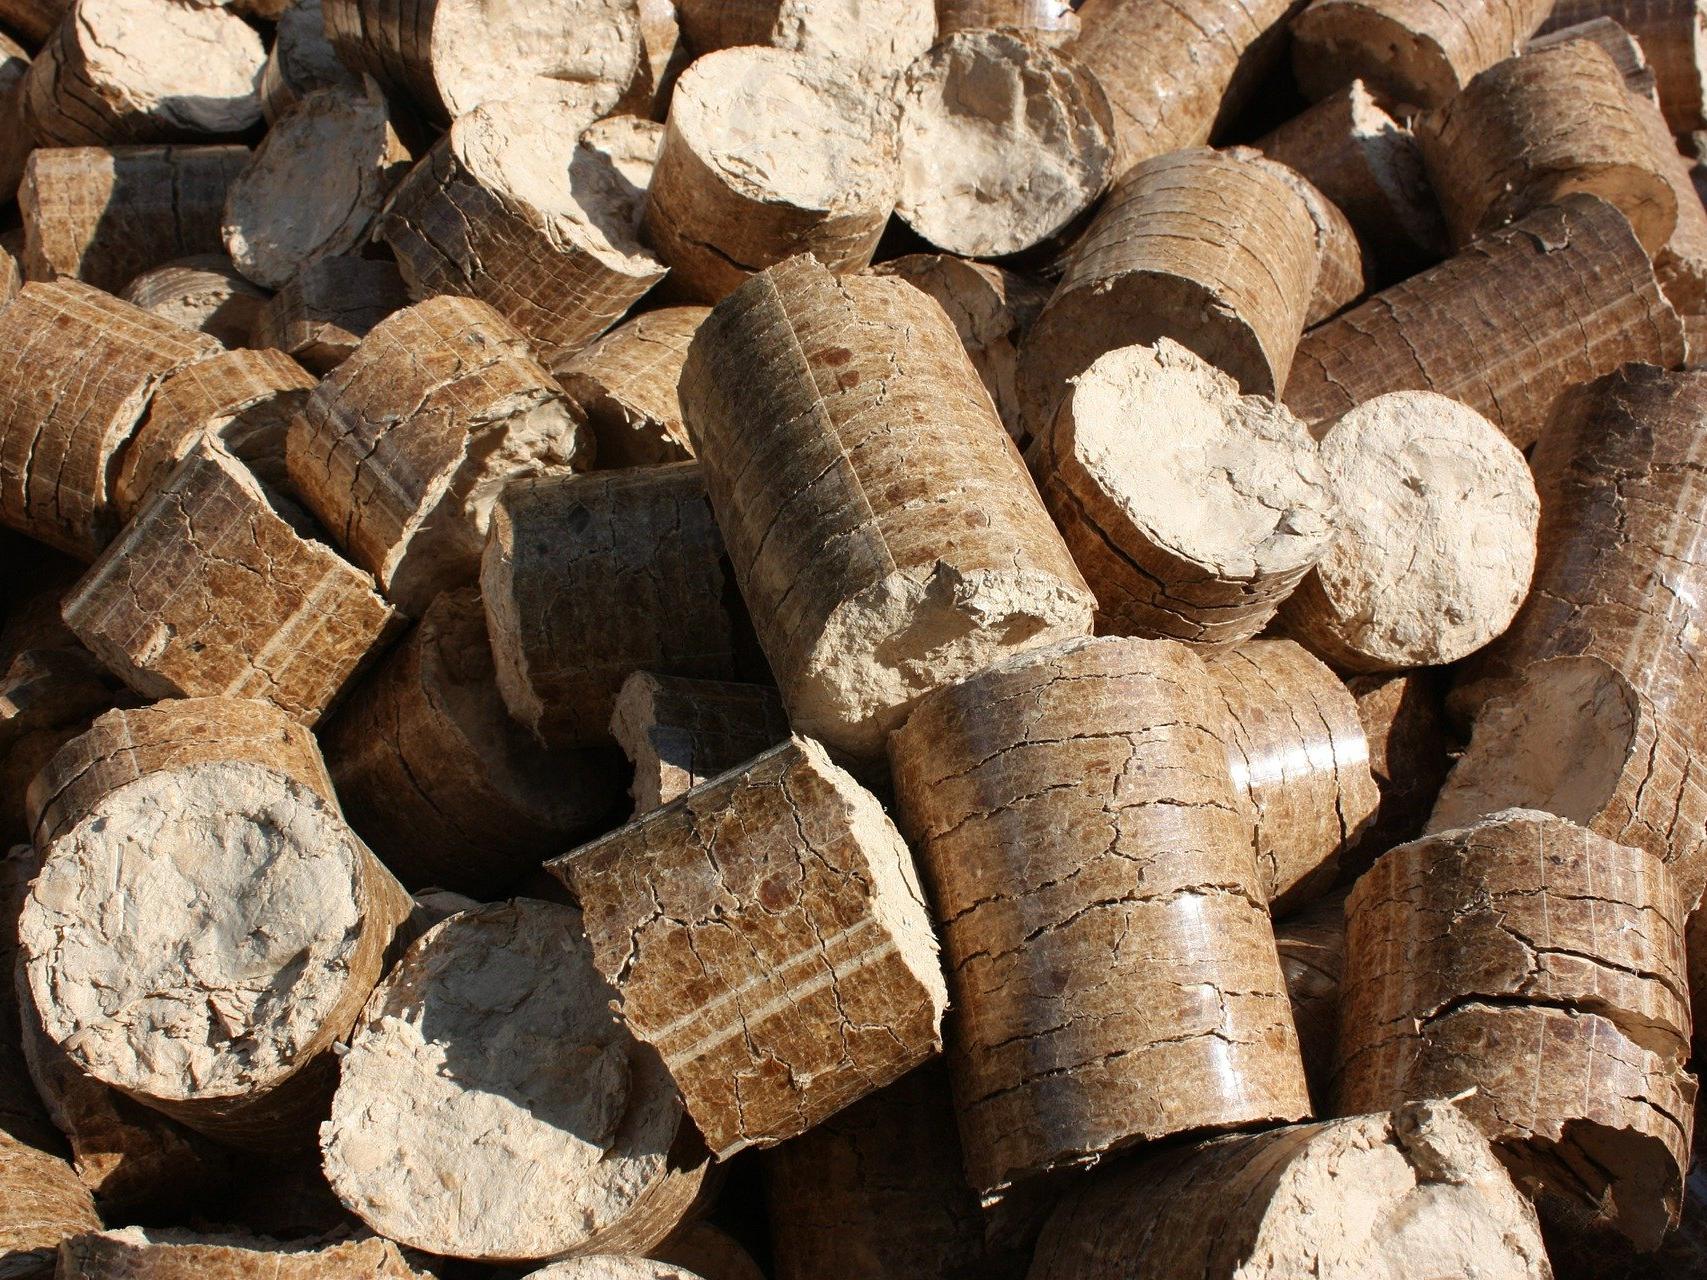 Holzpellets spenden Wärme und sind eine Alternative zu fossilen Energieträgern wie Gas oder Öl – auch für Kirchenheizungen.